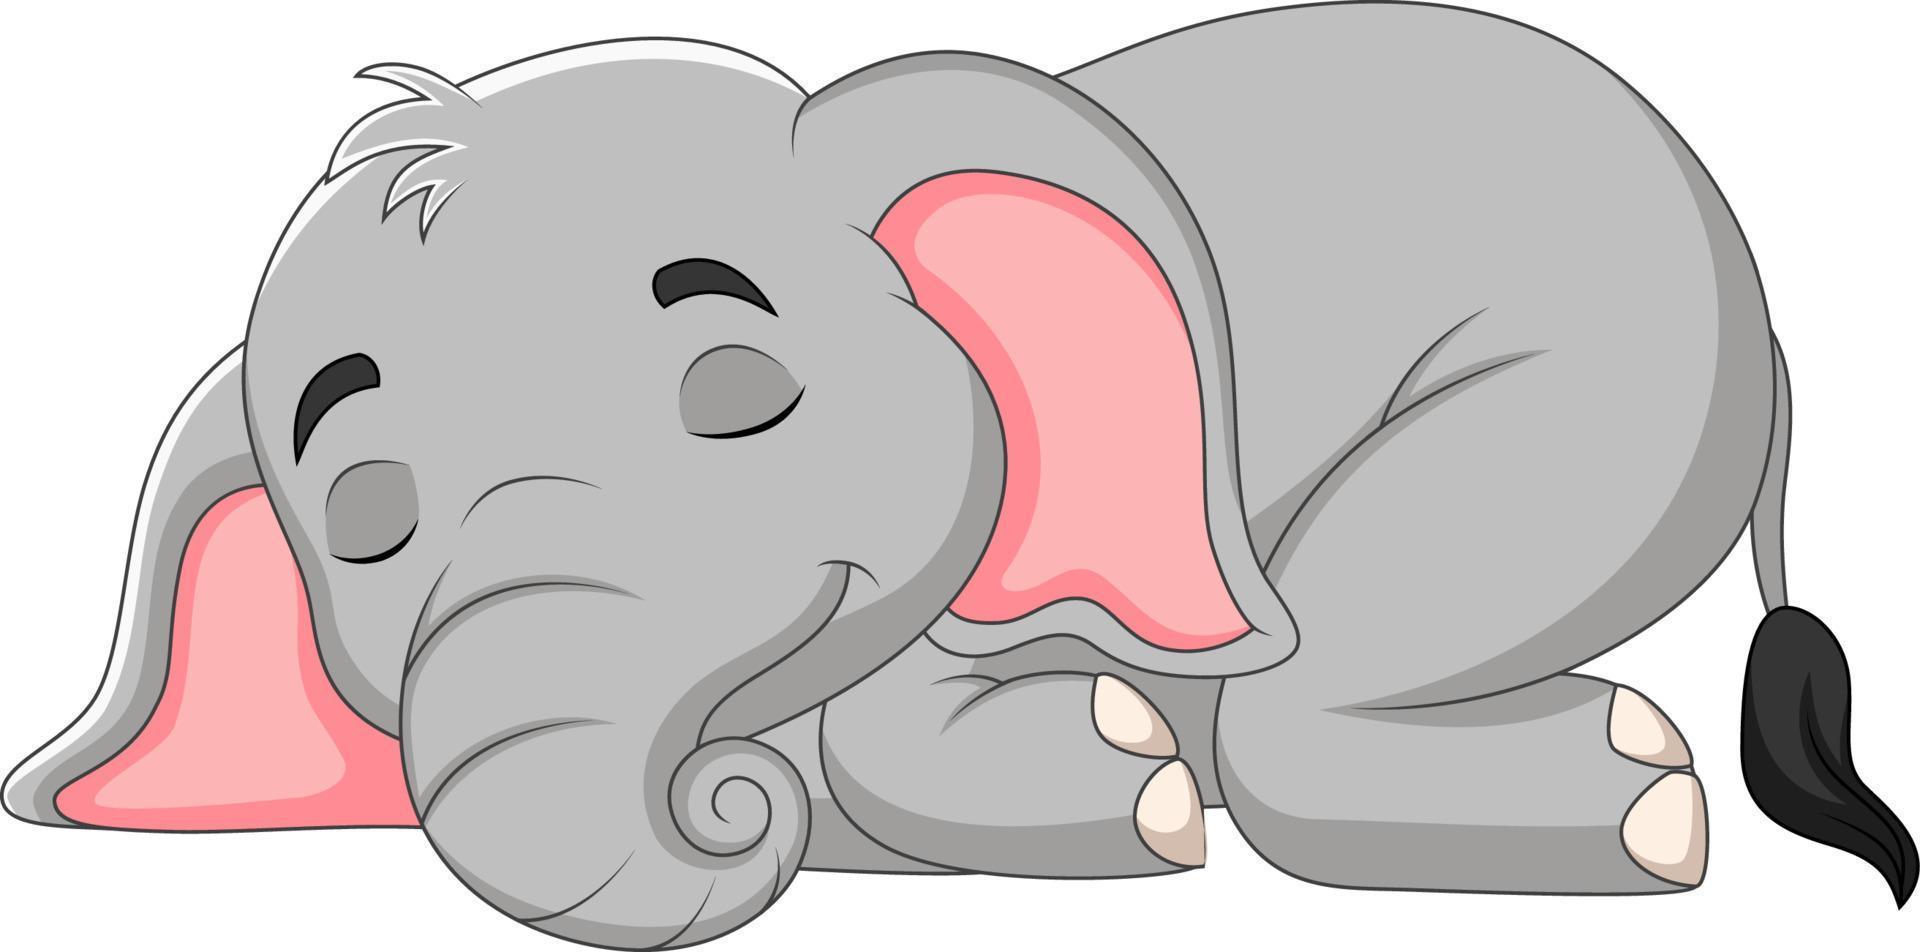 cartone animato elefantino che dorme vettore